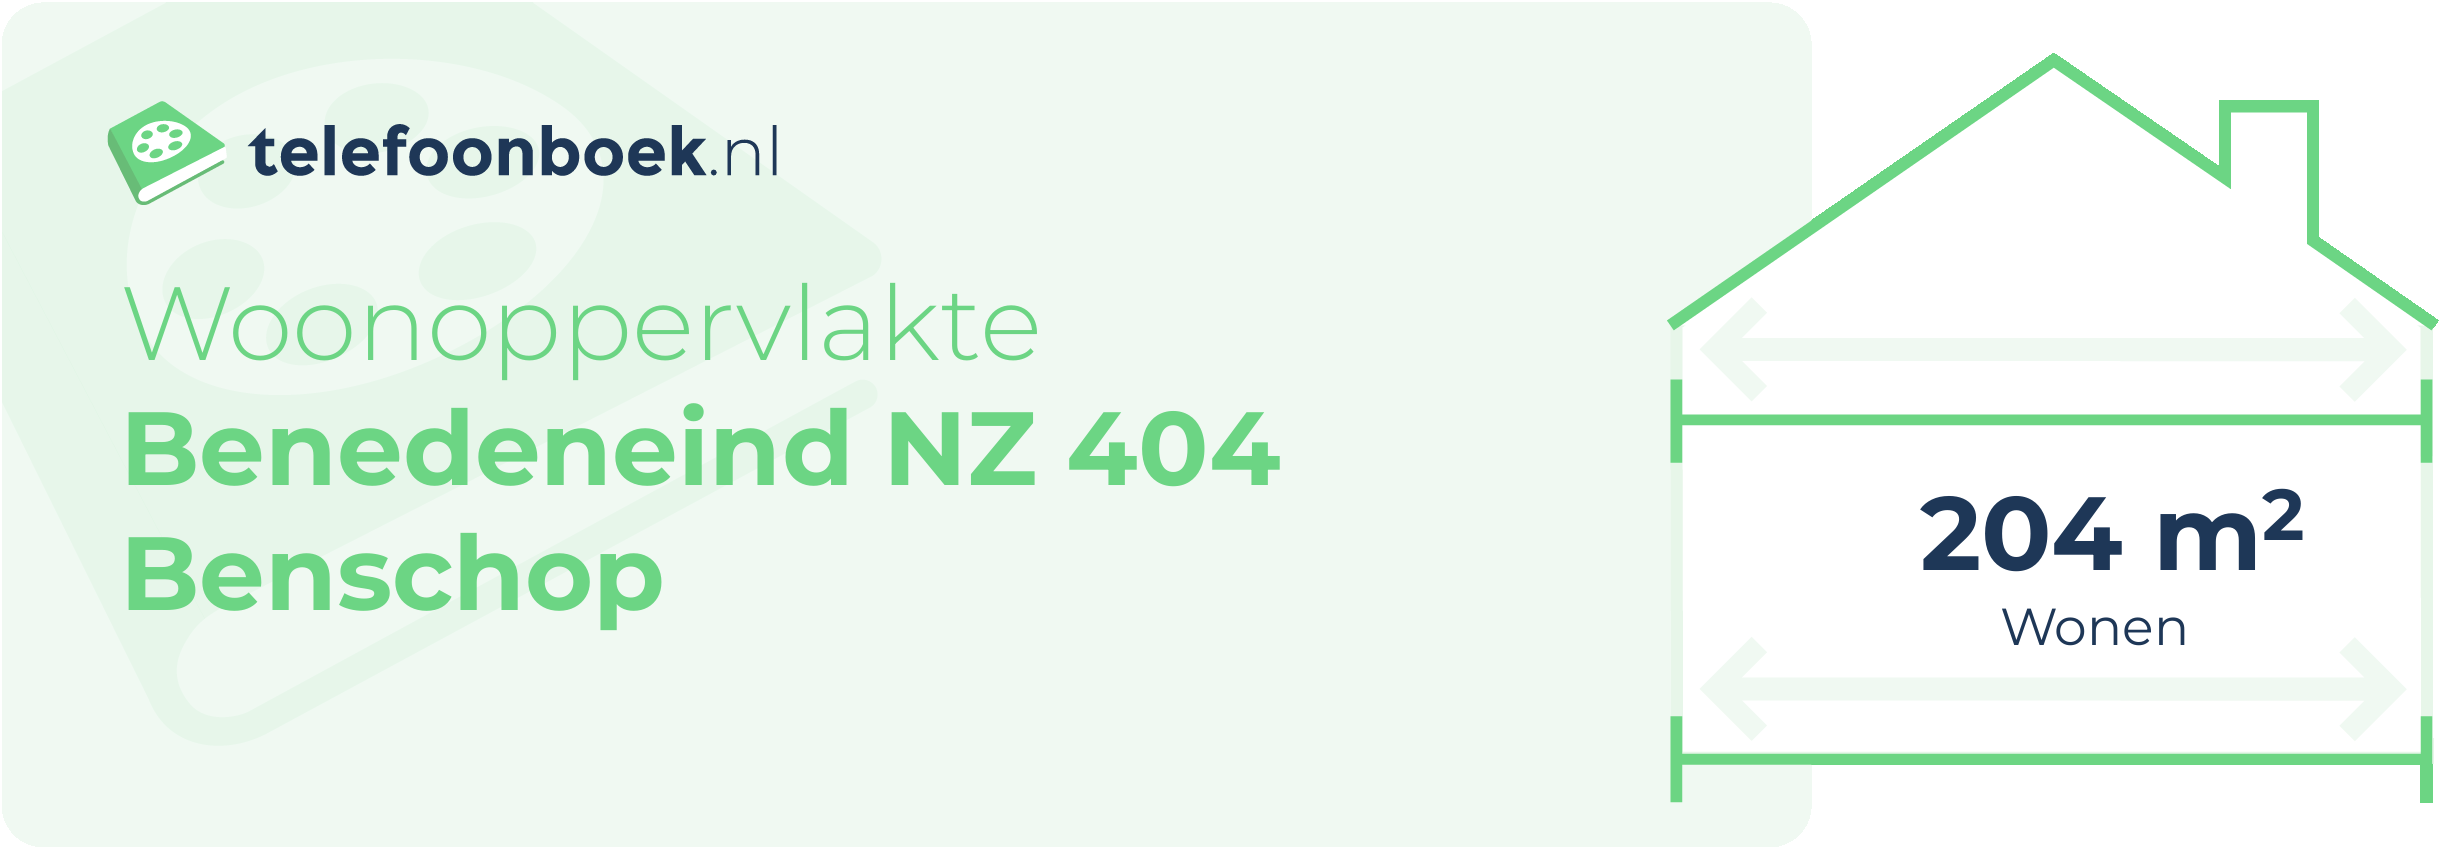 Woonoppervlakte Benedeneind NZ 404 Benschop